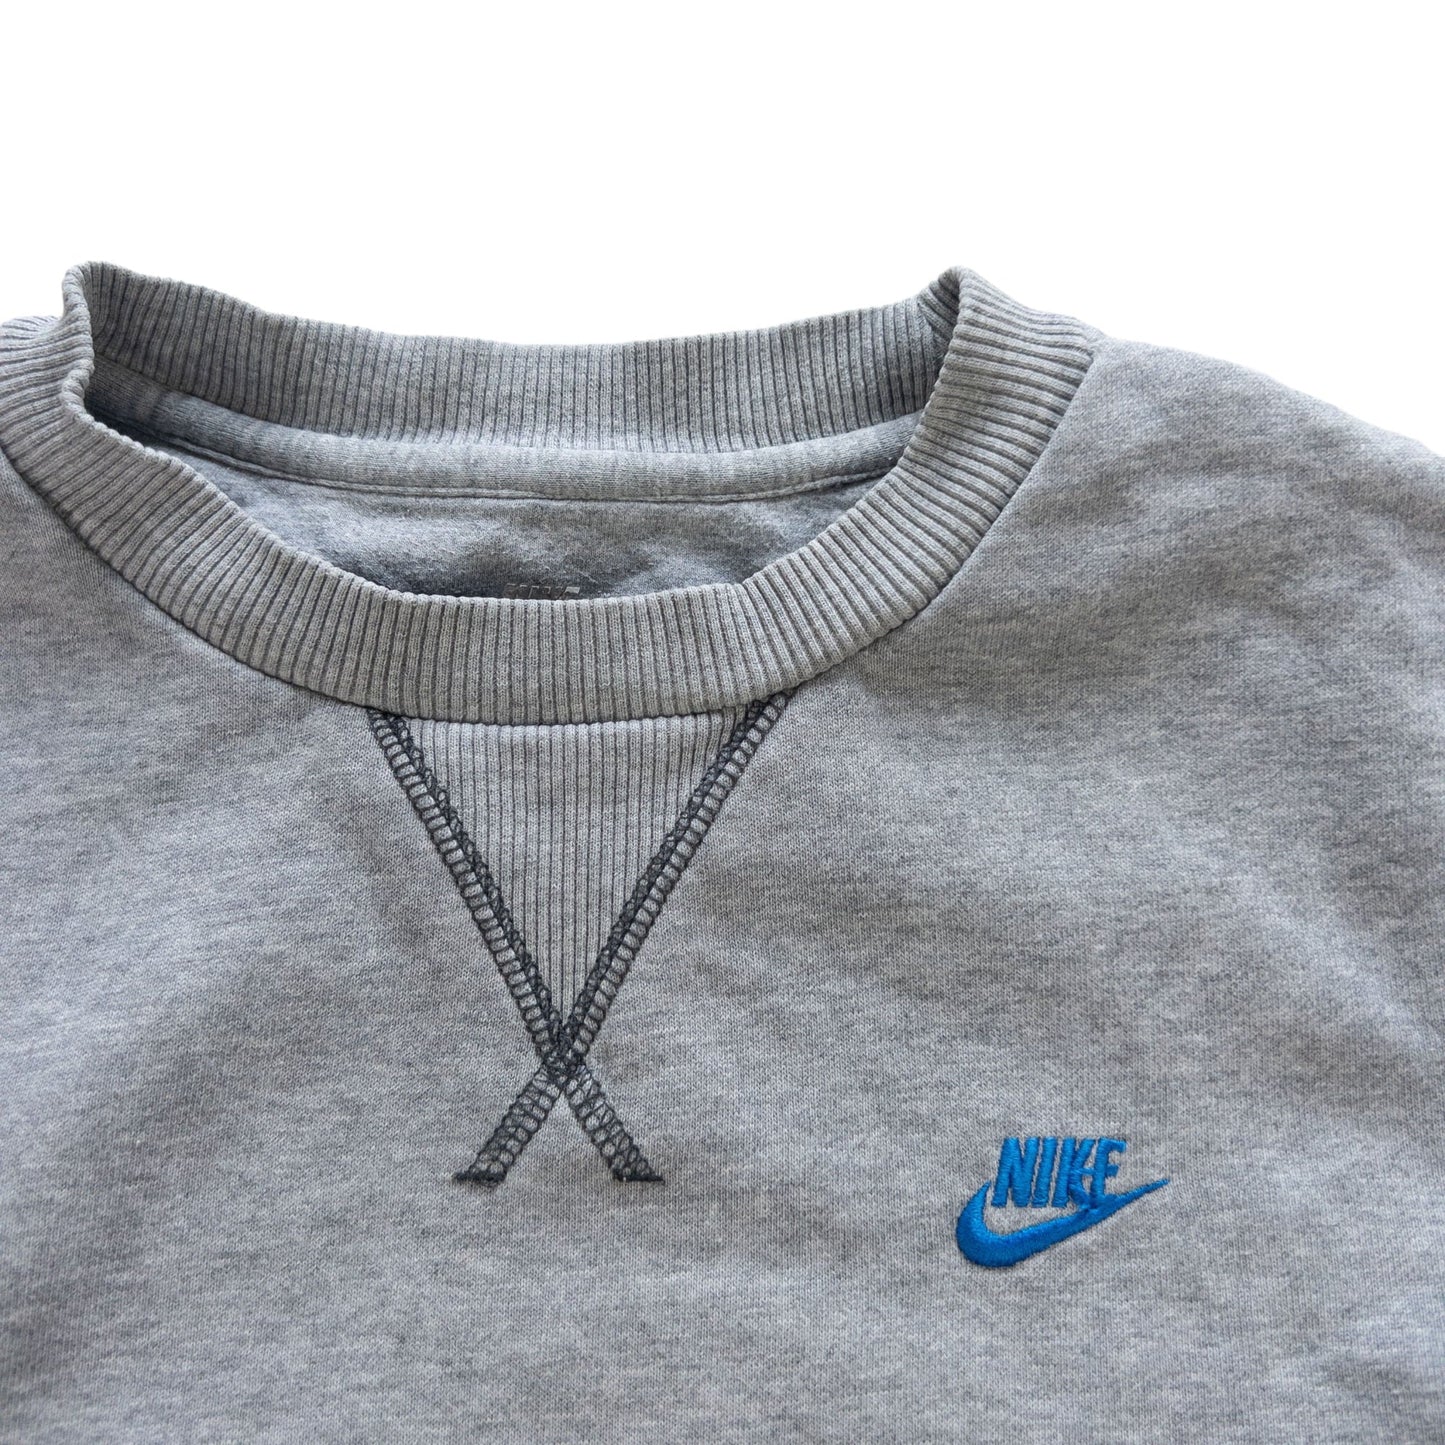 Nike Sweatshirt Size S